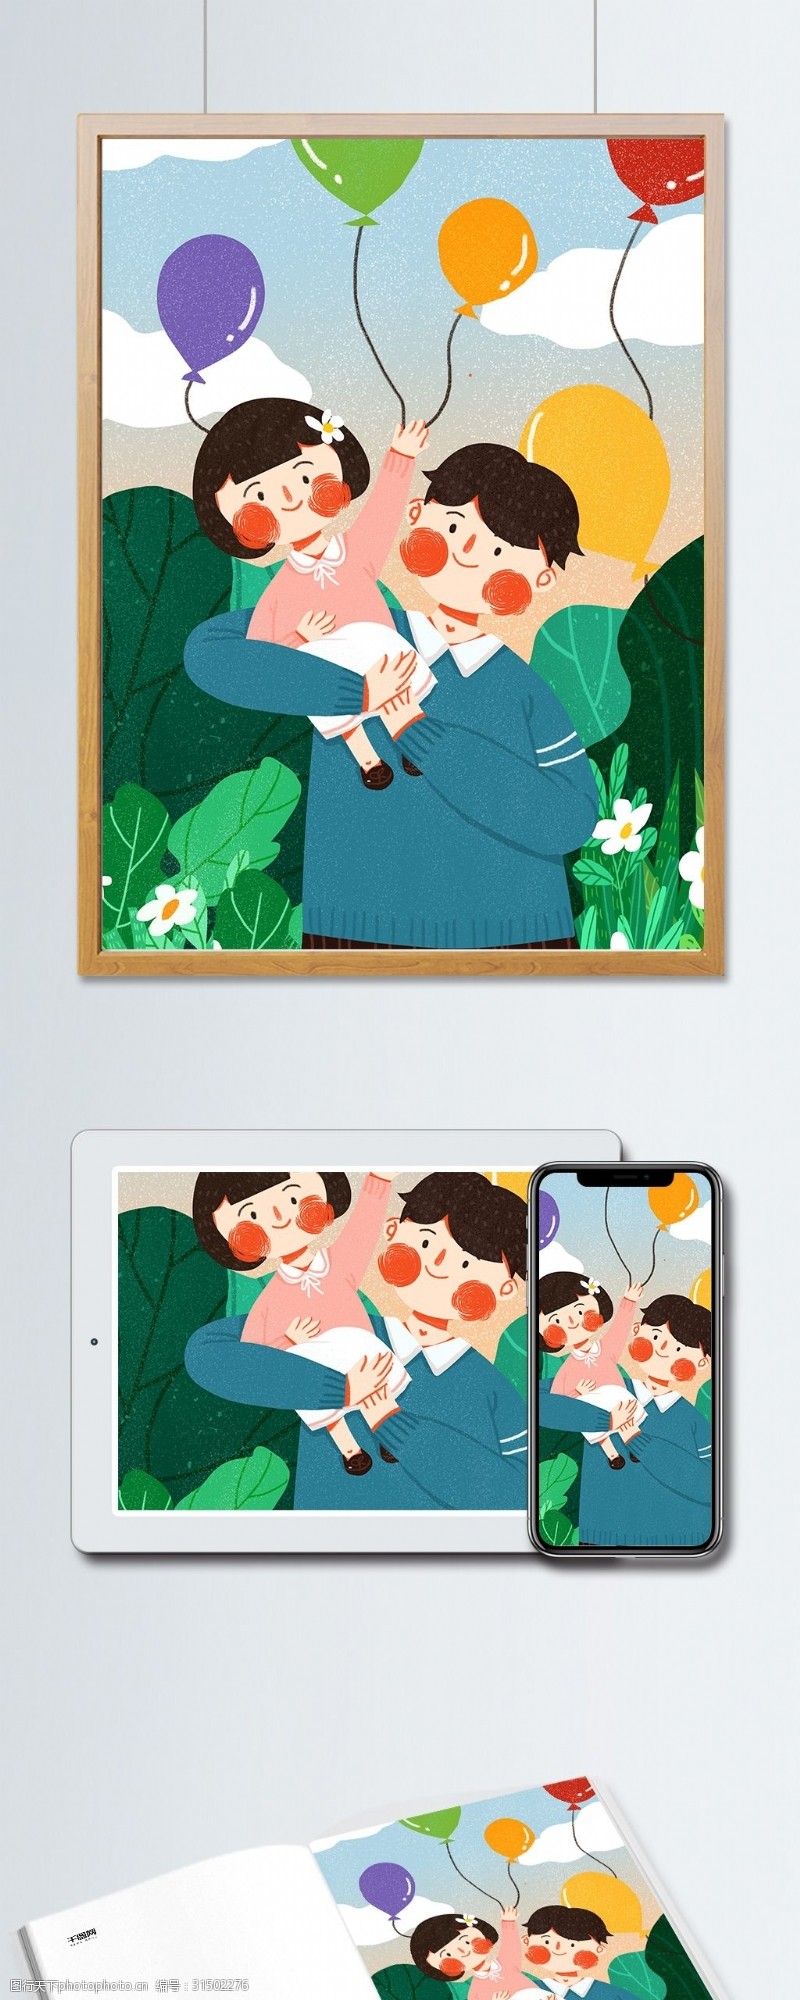 手机配图国际儿童节关爱儿童可爱简约扁平原创插画